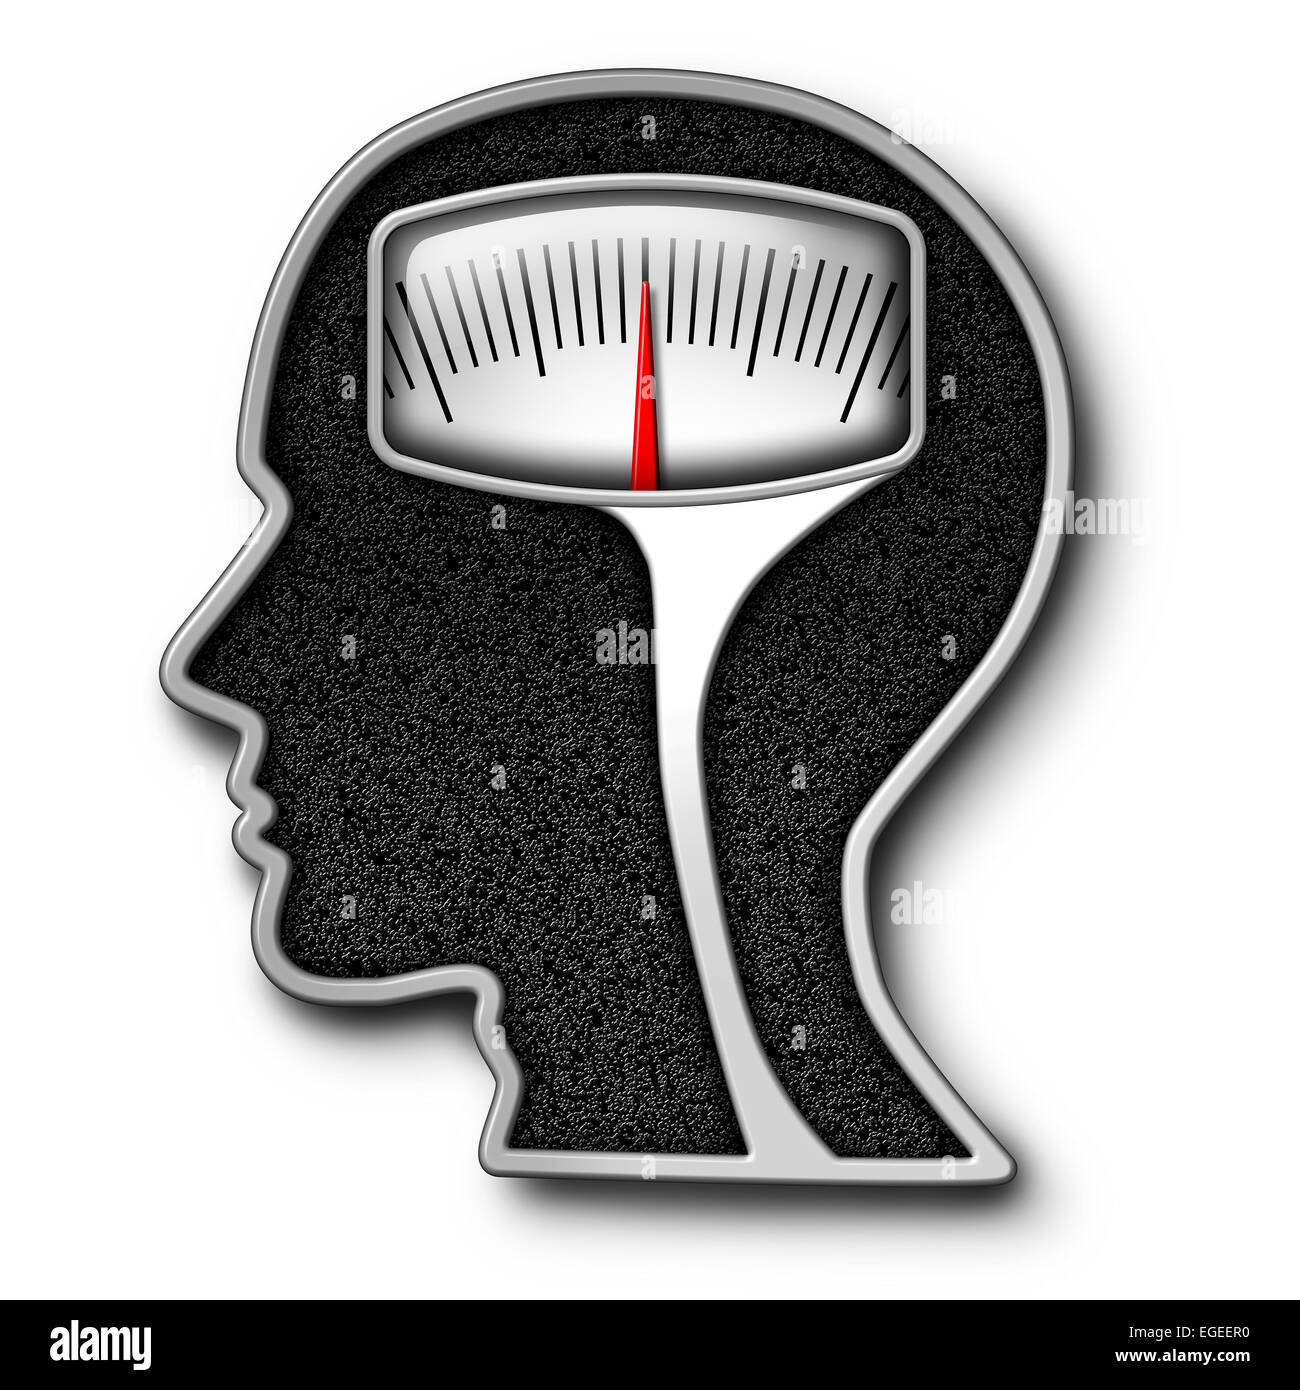 Psychologie régime concept comme échelle de poids en forme de tête humaine comme un symbole pour les questions de l'alimentation et l'obsession de compter les calories avec un kilogramme ou livre de l'équipement de mesure. Banque D'Images